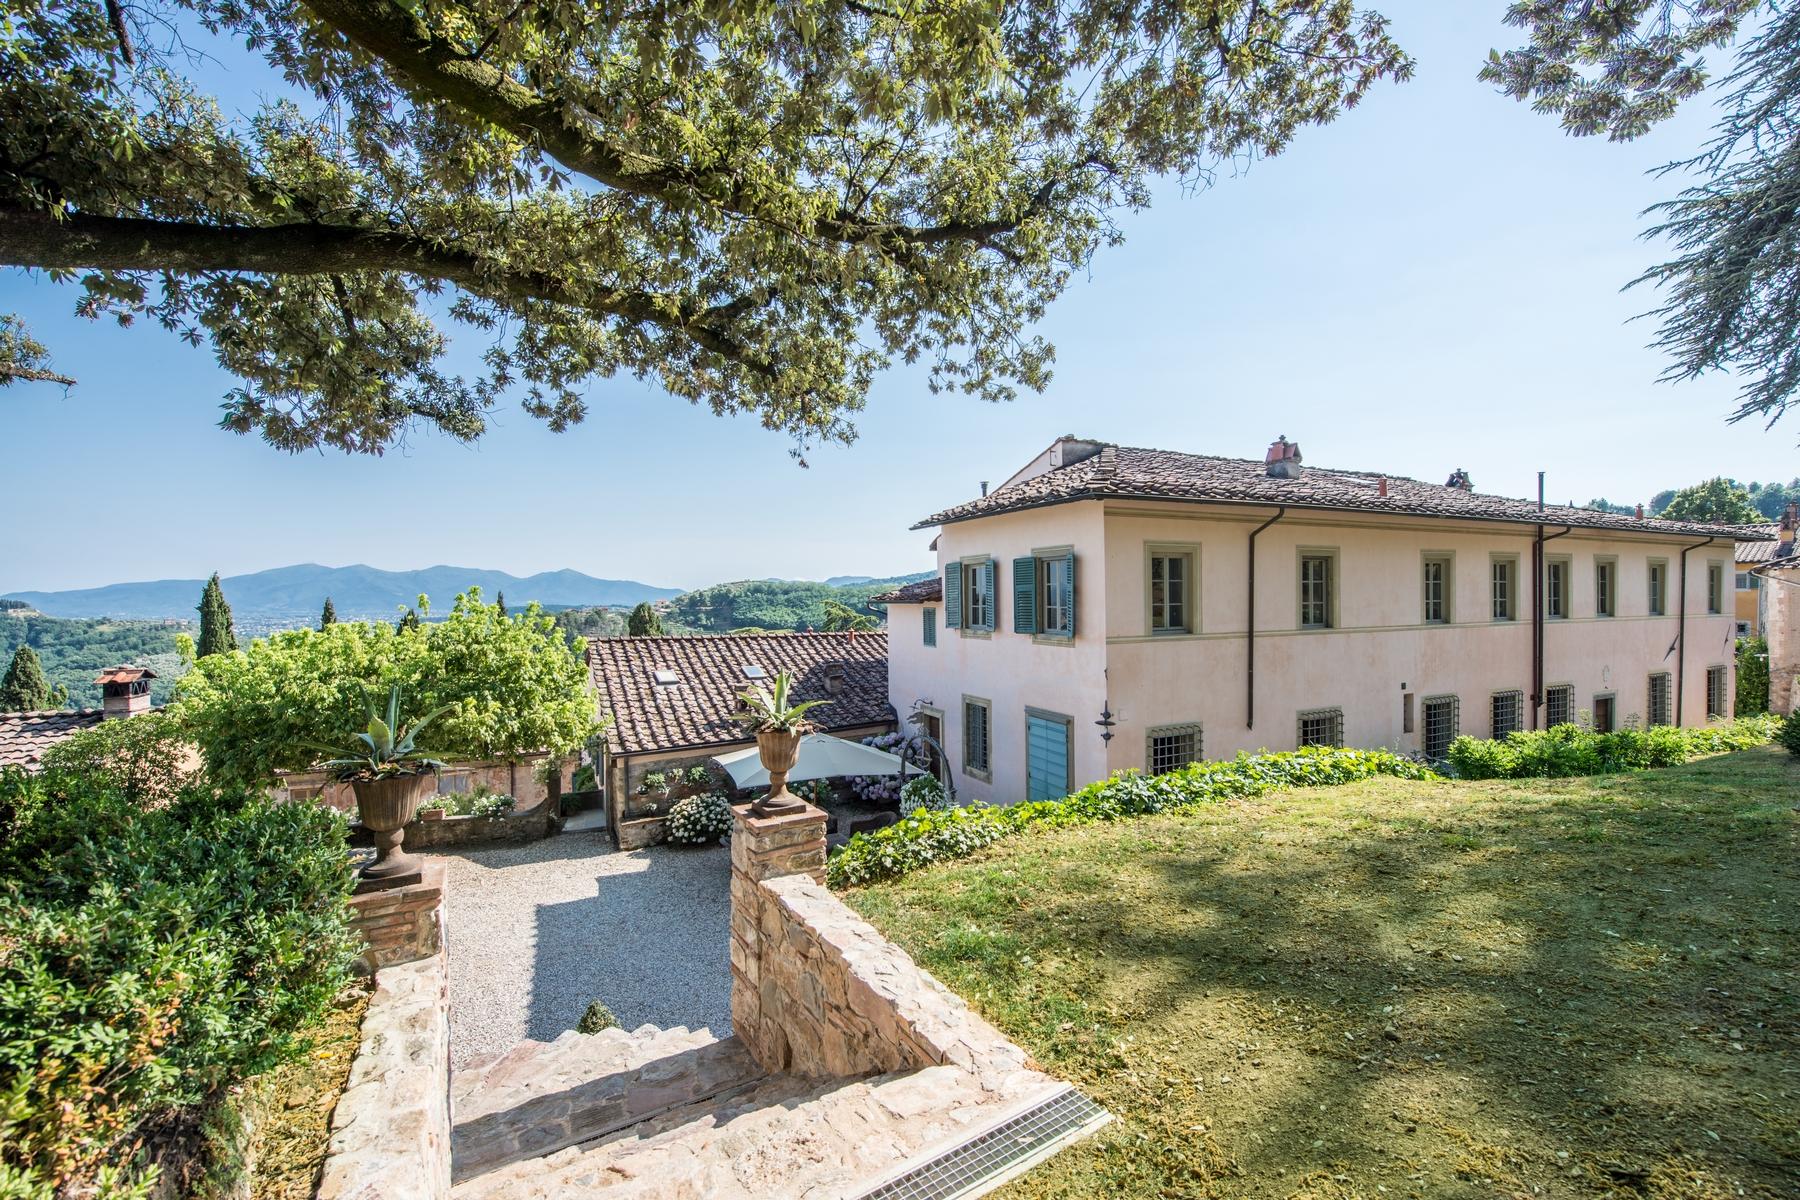 Splendida villa del 1700 nei pressi di Lucca - 16